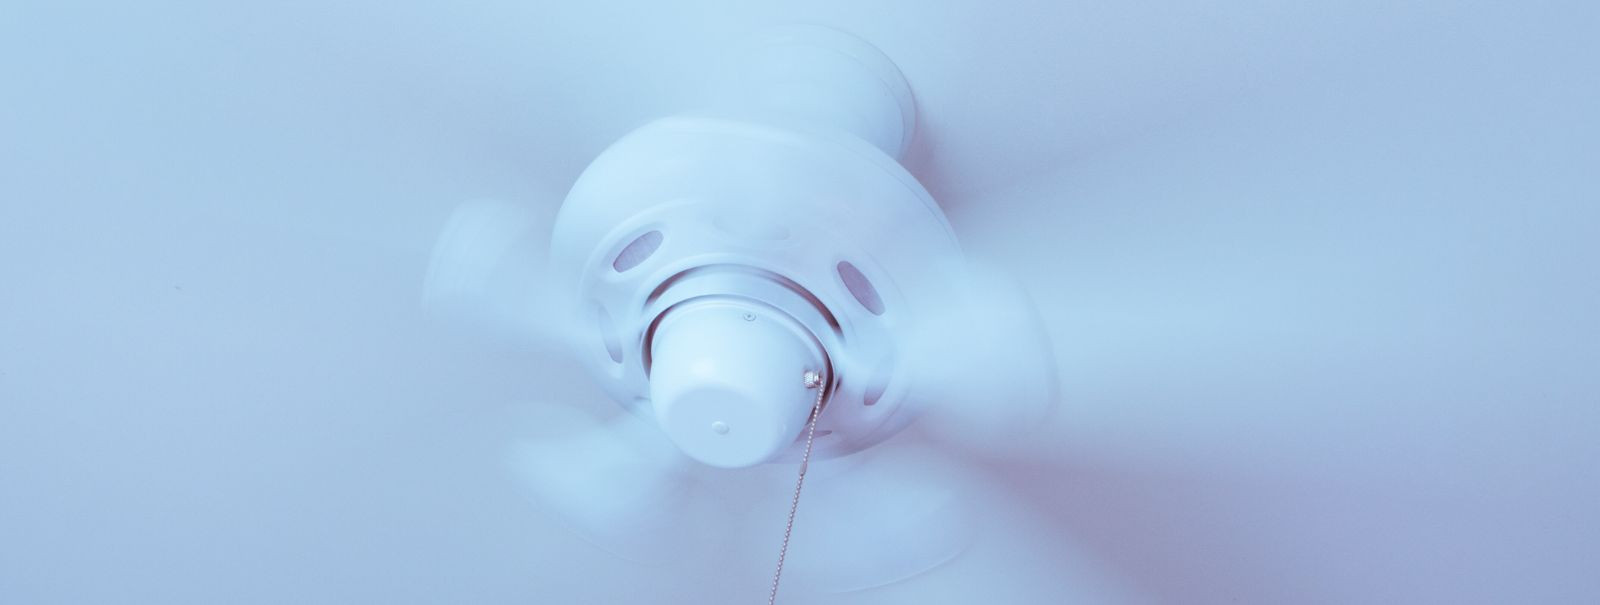 On oluline tagada, et teie kodus oleks korralik ventilatsioon, ...